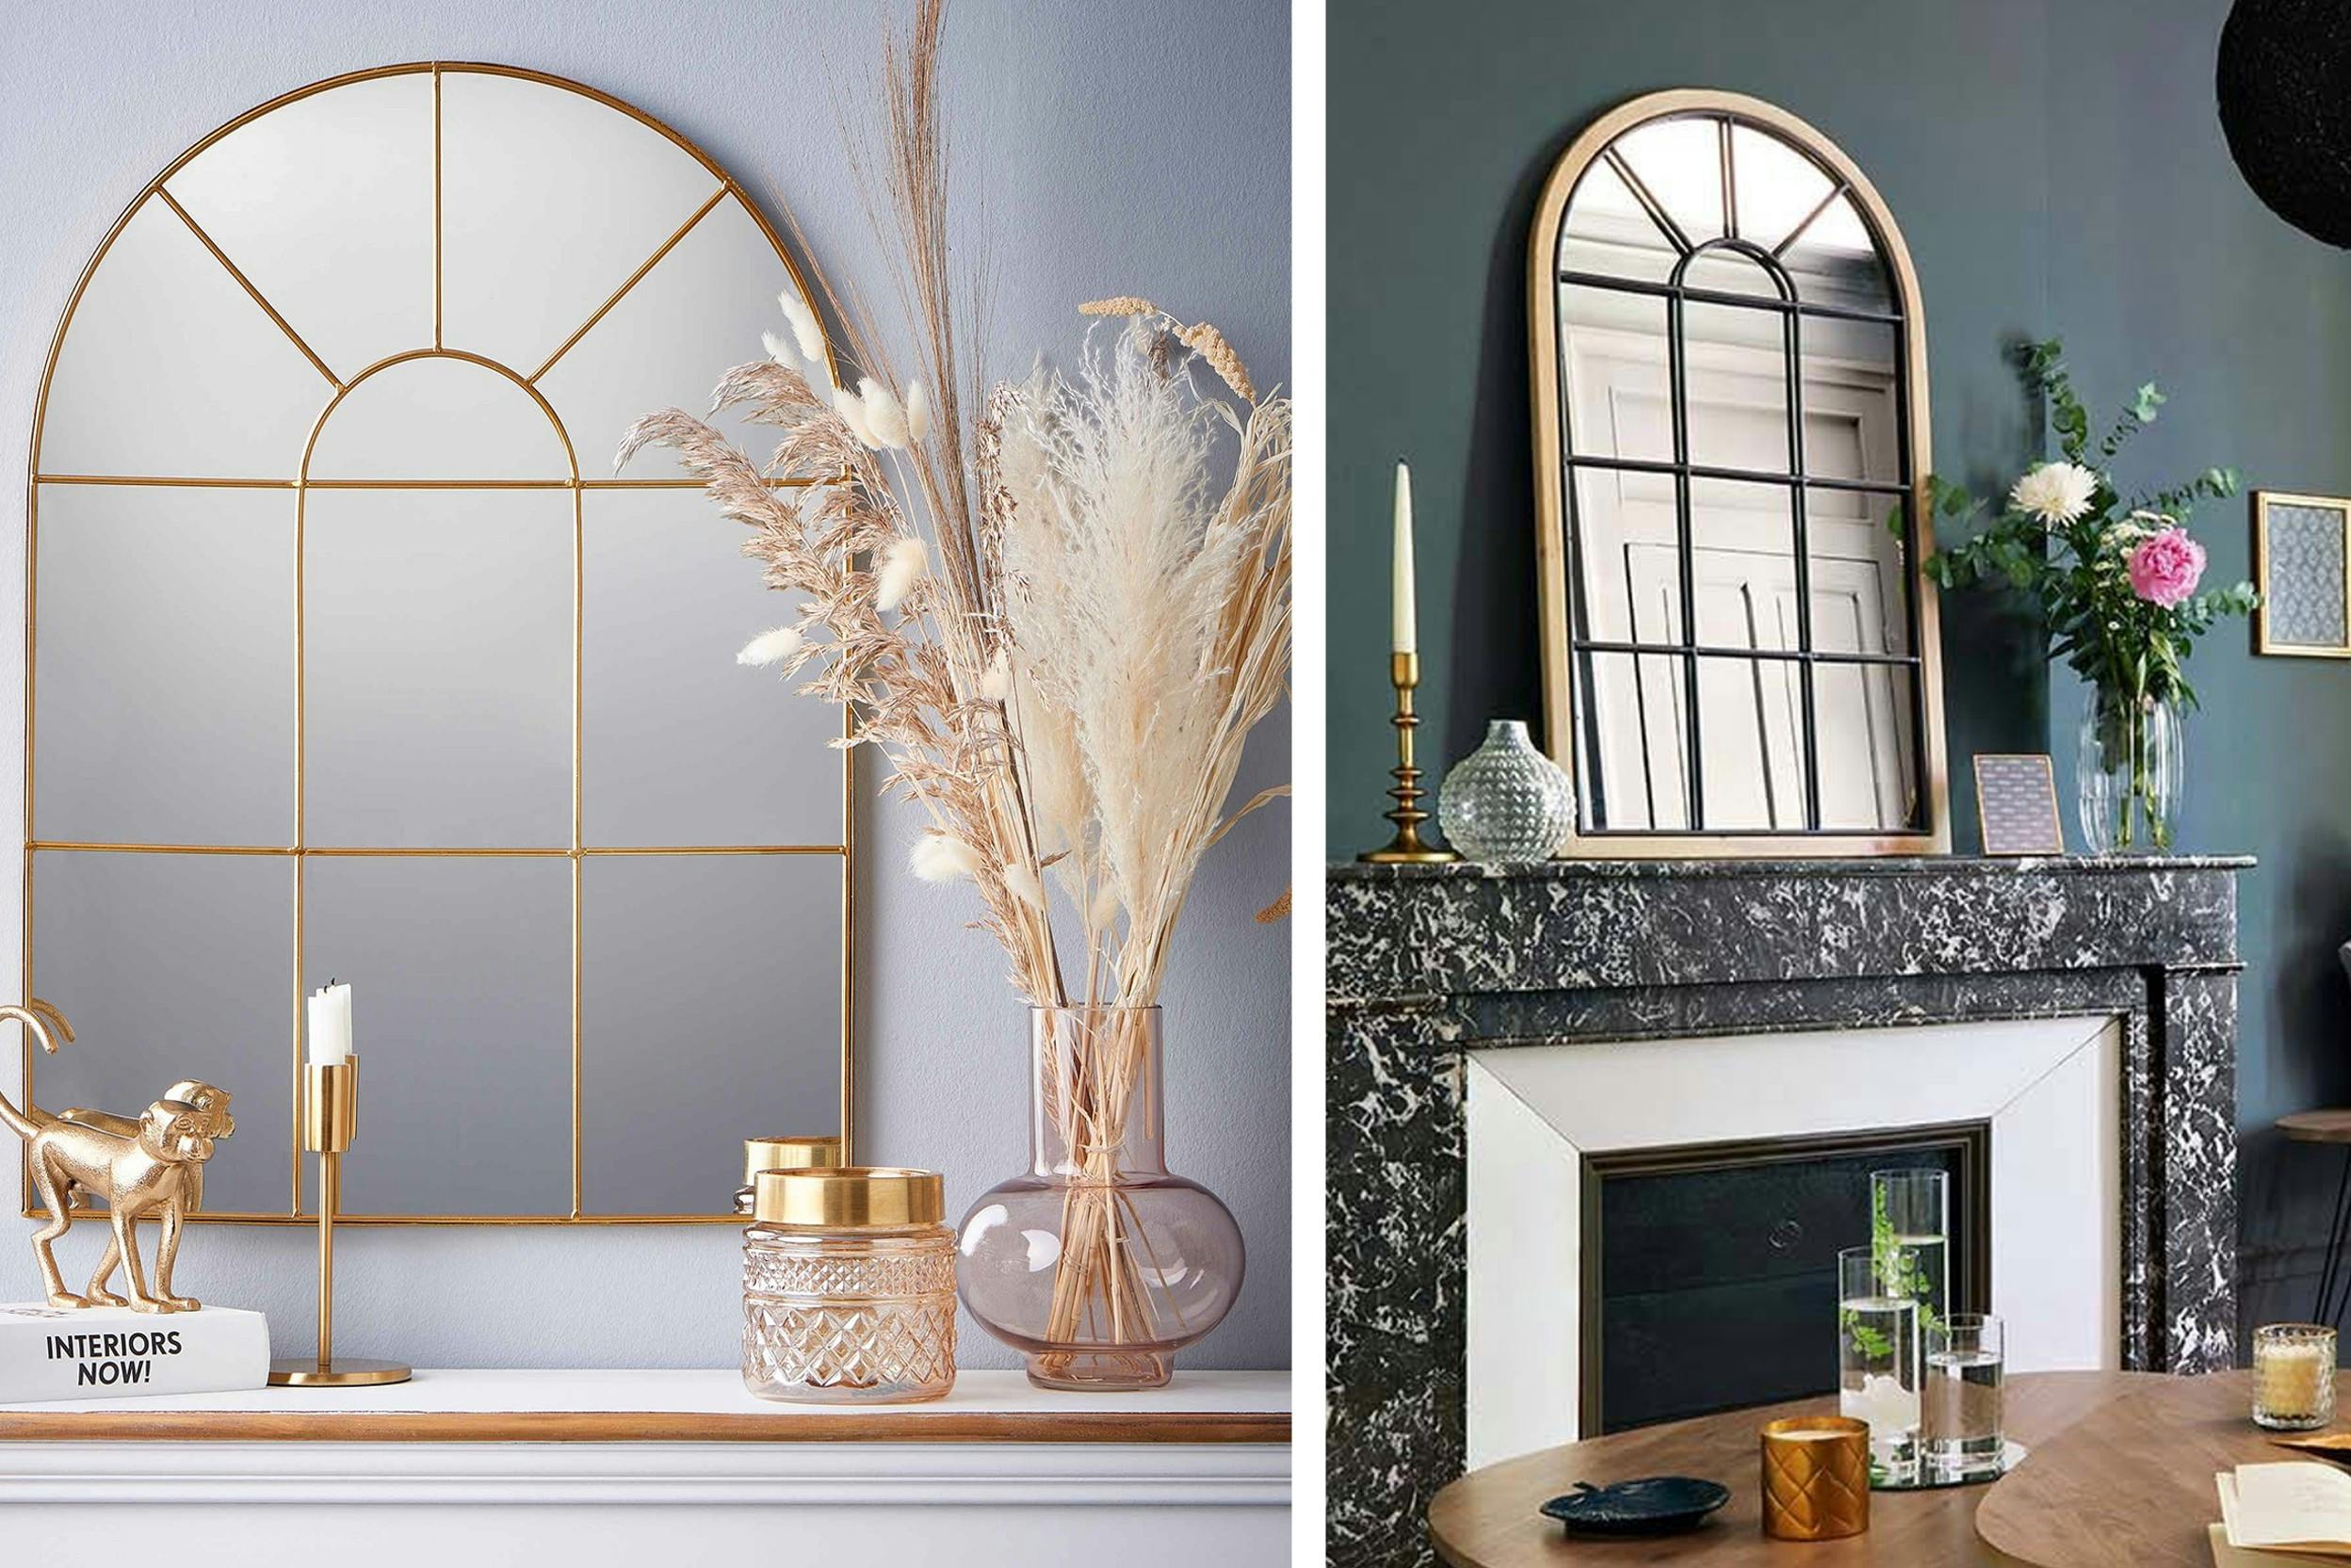 Spiegels in de vorm van een ouderwets raam in goudkleurig design.